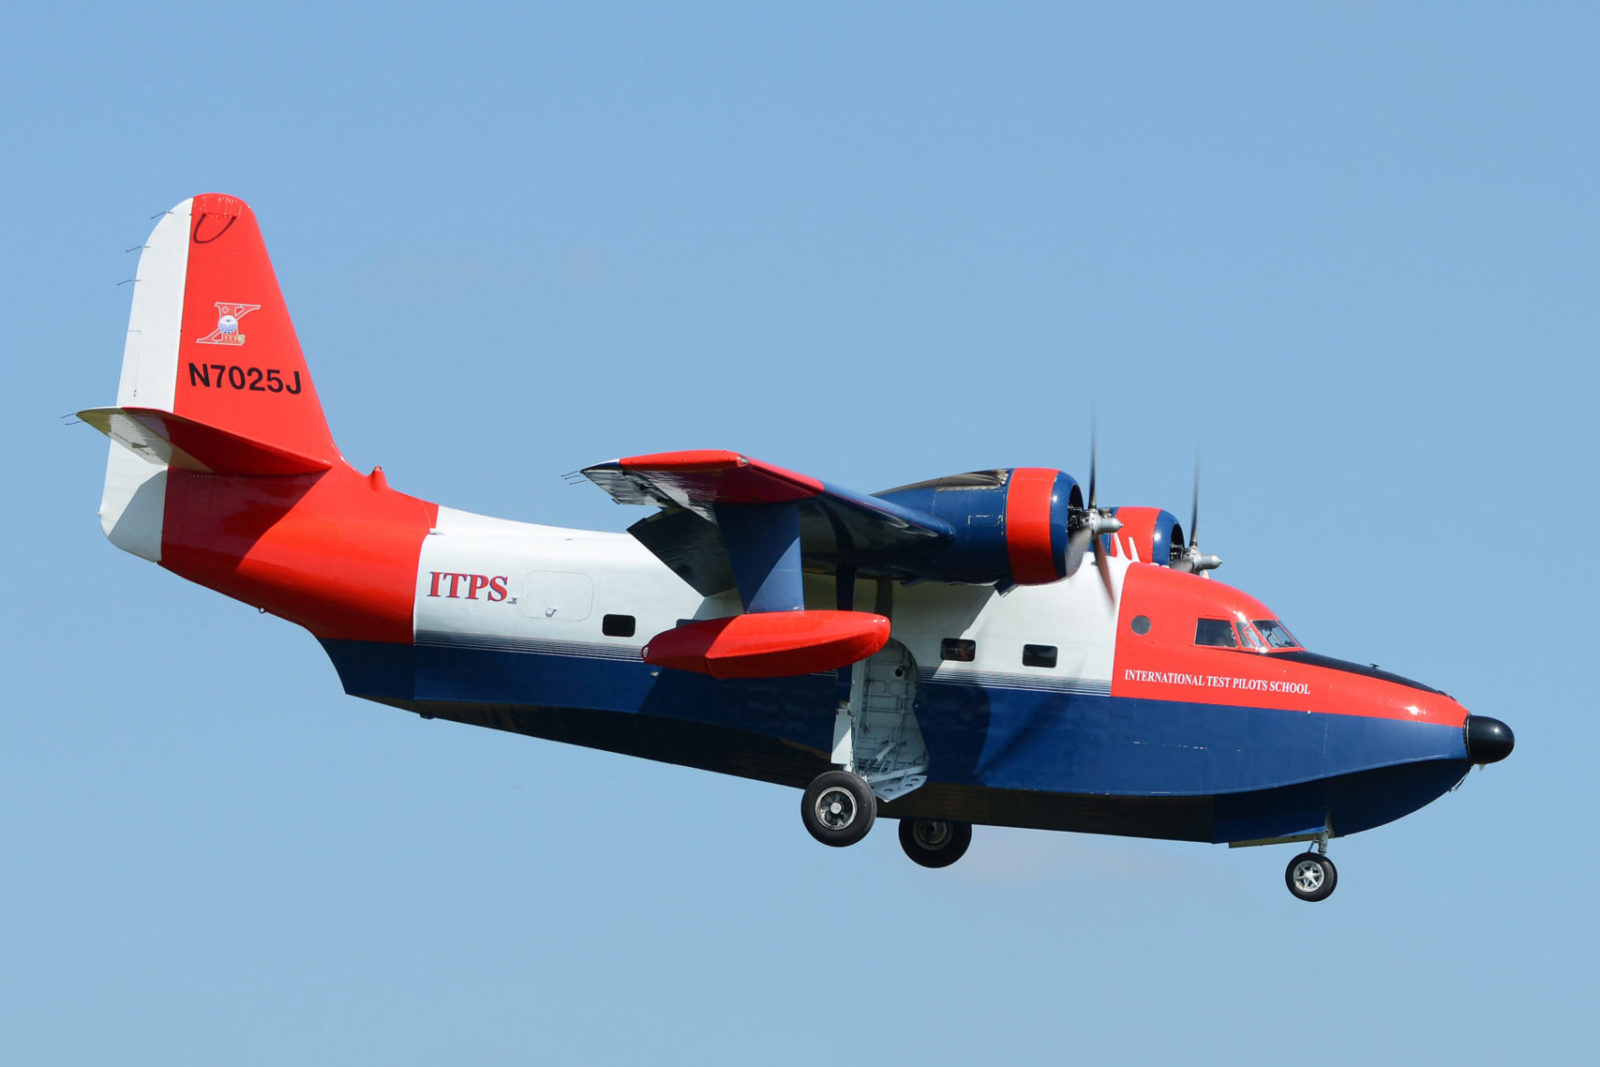 Red and blue Grumman HU-16 Albatross Aircraft.